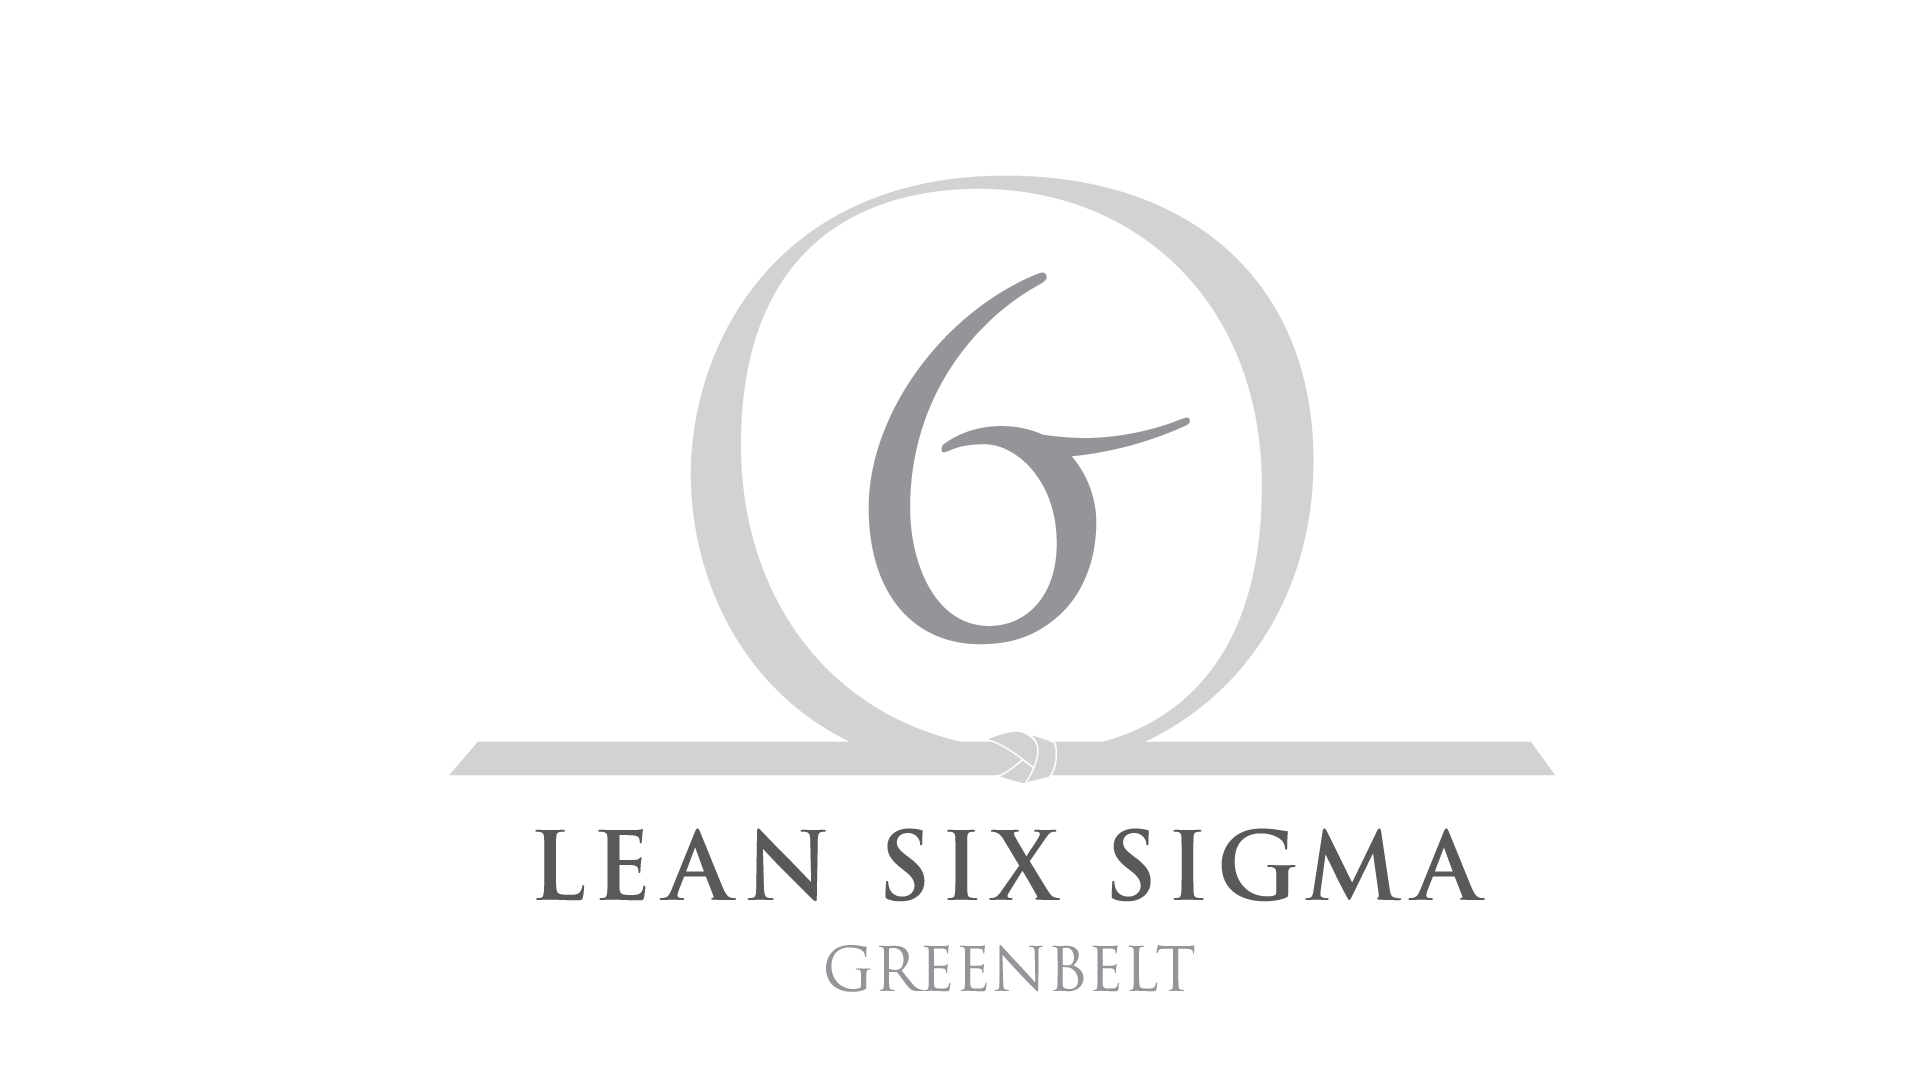 Сигма 69. Lean 6 Sigma. Lean Six Sigma. Лин 6 Сигма это. Лин 6 Сигма логотип.